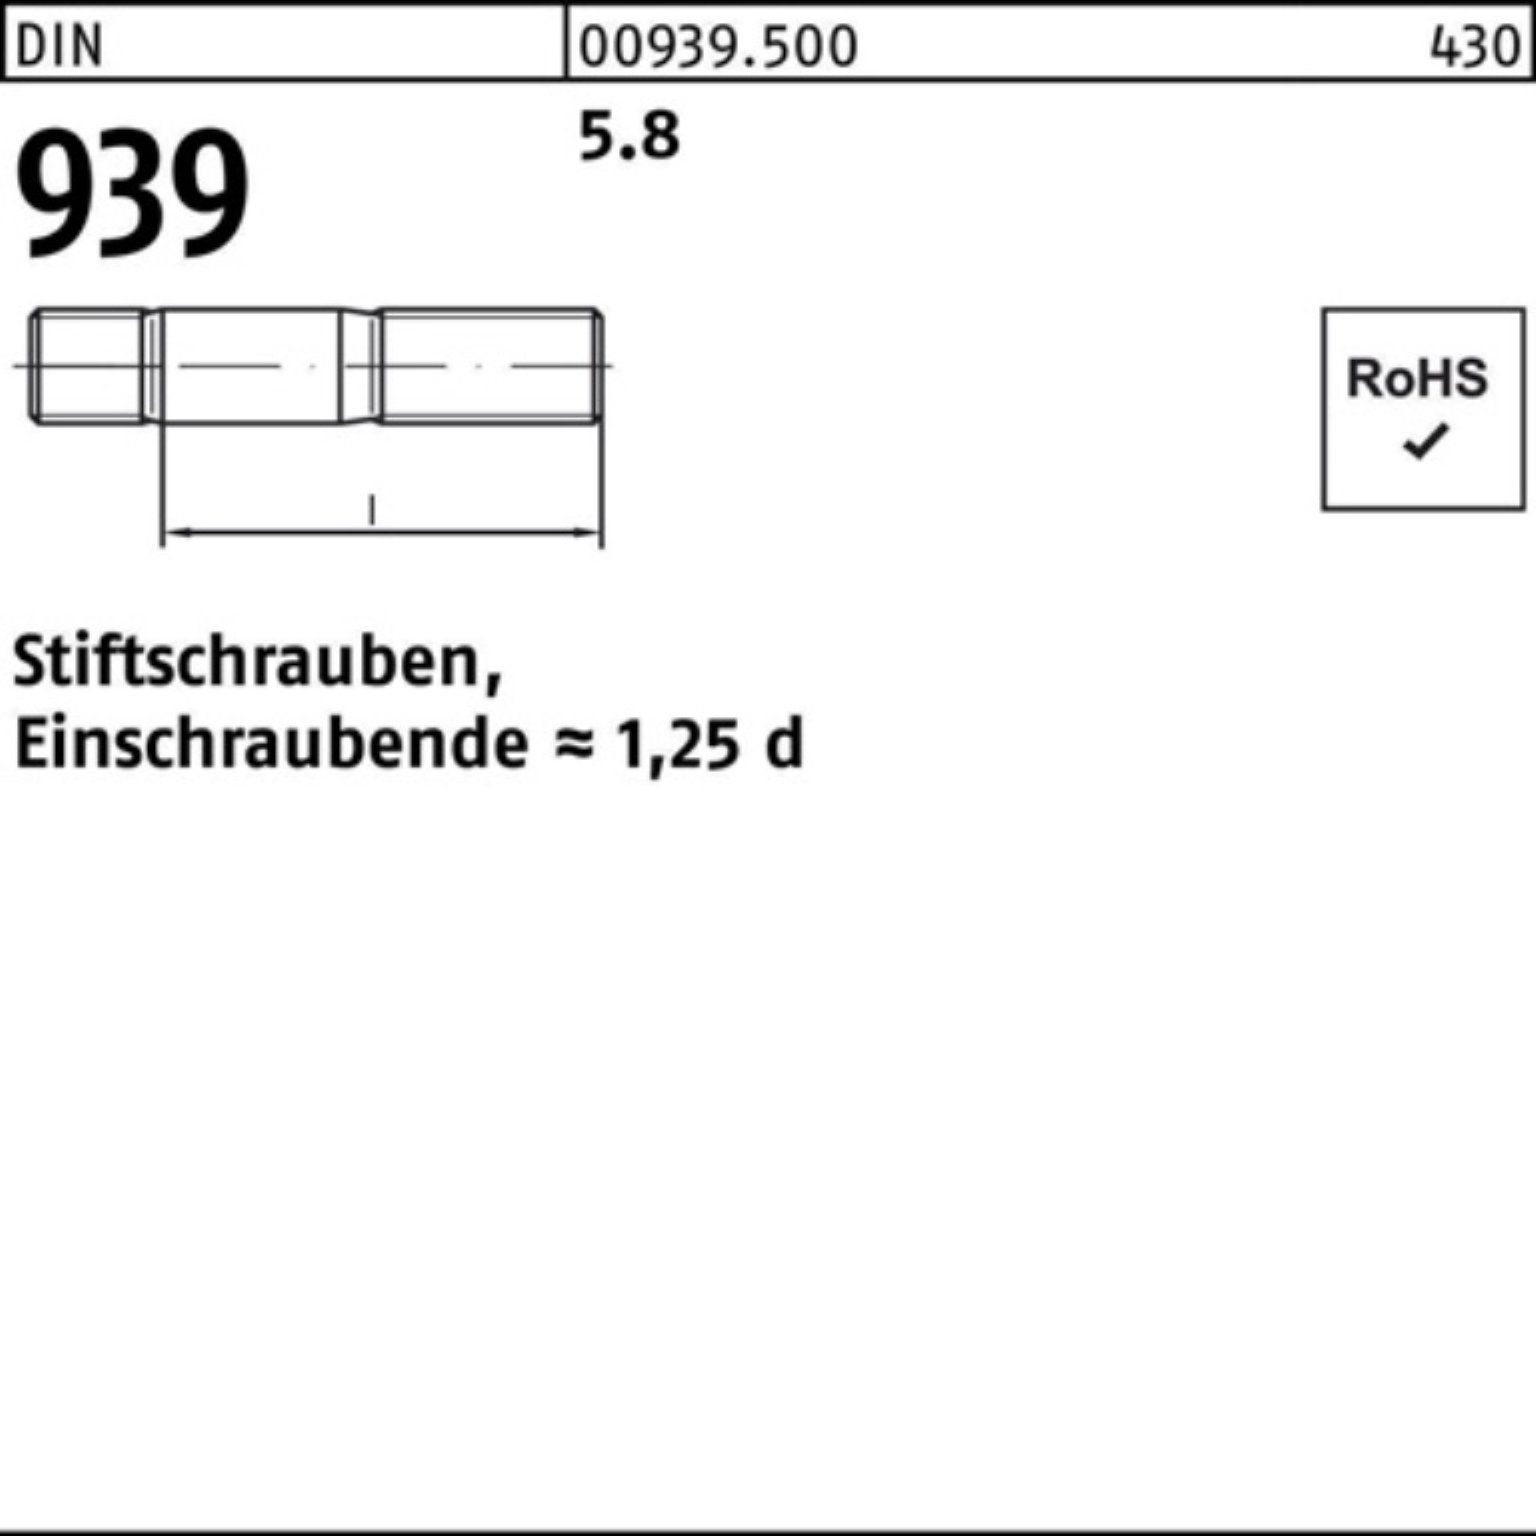 Reyher Stiftschraube 100er Pack Stiftschraube 70 10 M24x 939 Einschraubende=1,25d 5.8 S DIN